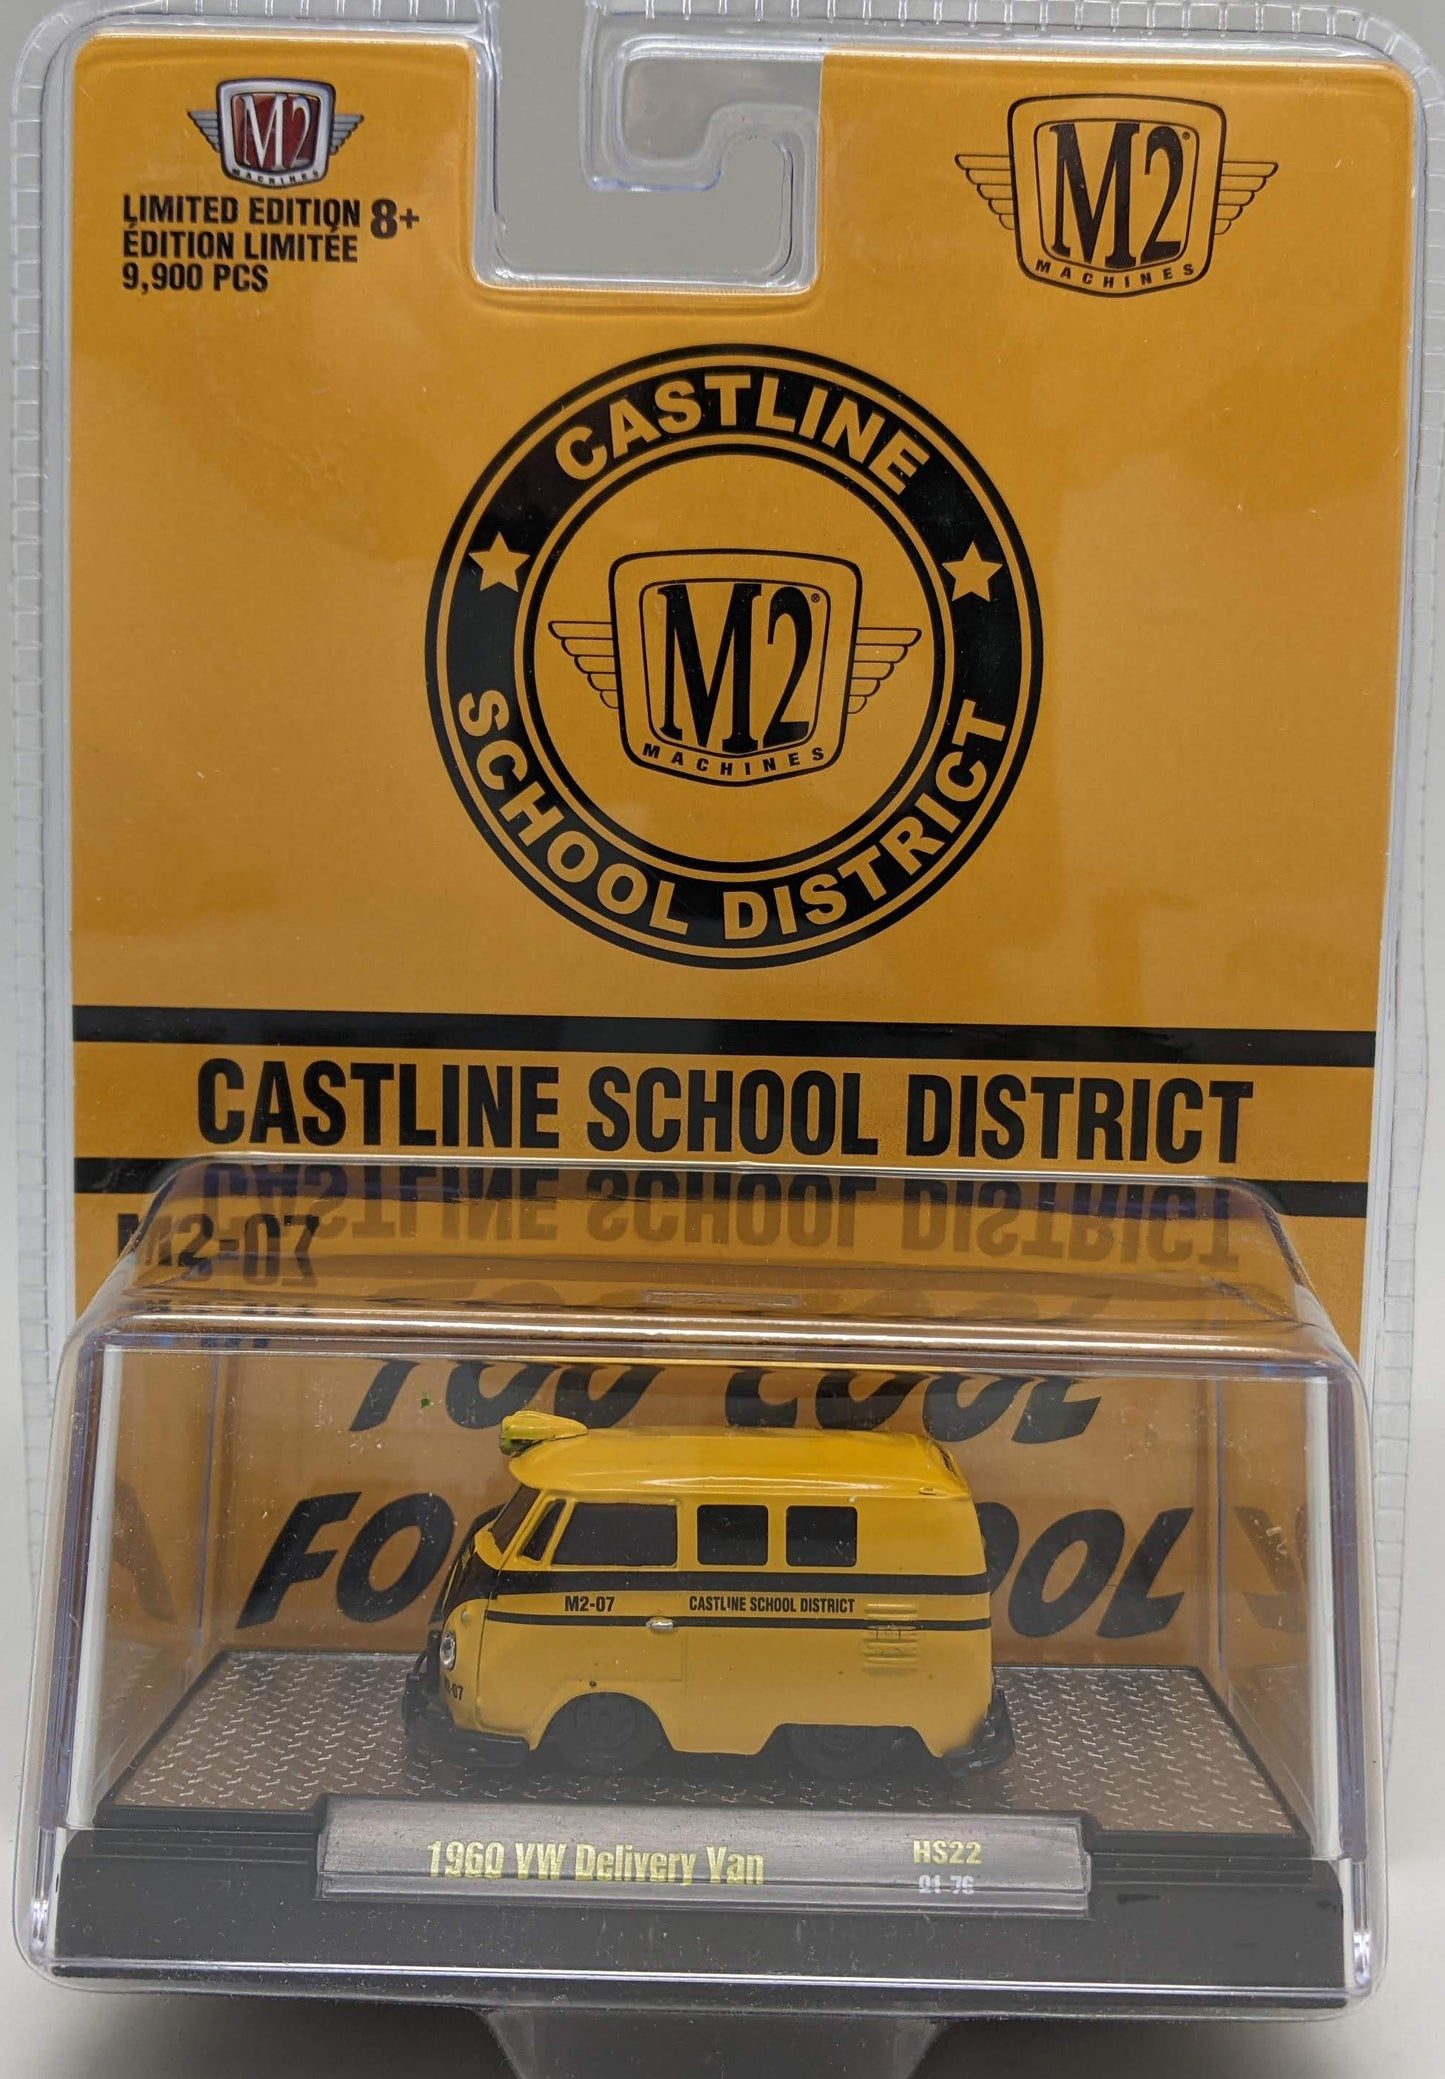 M2 1960 VW Delivery Van - Castline School District